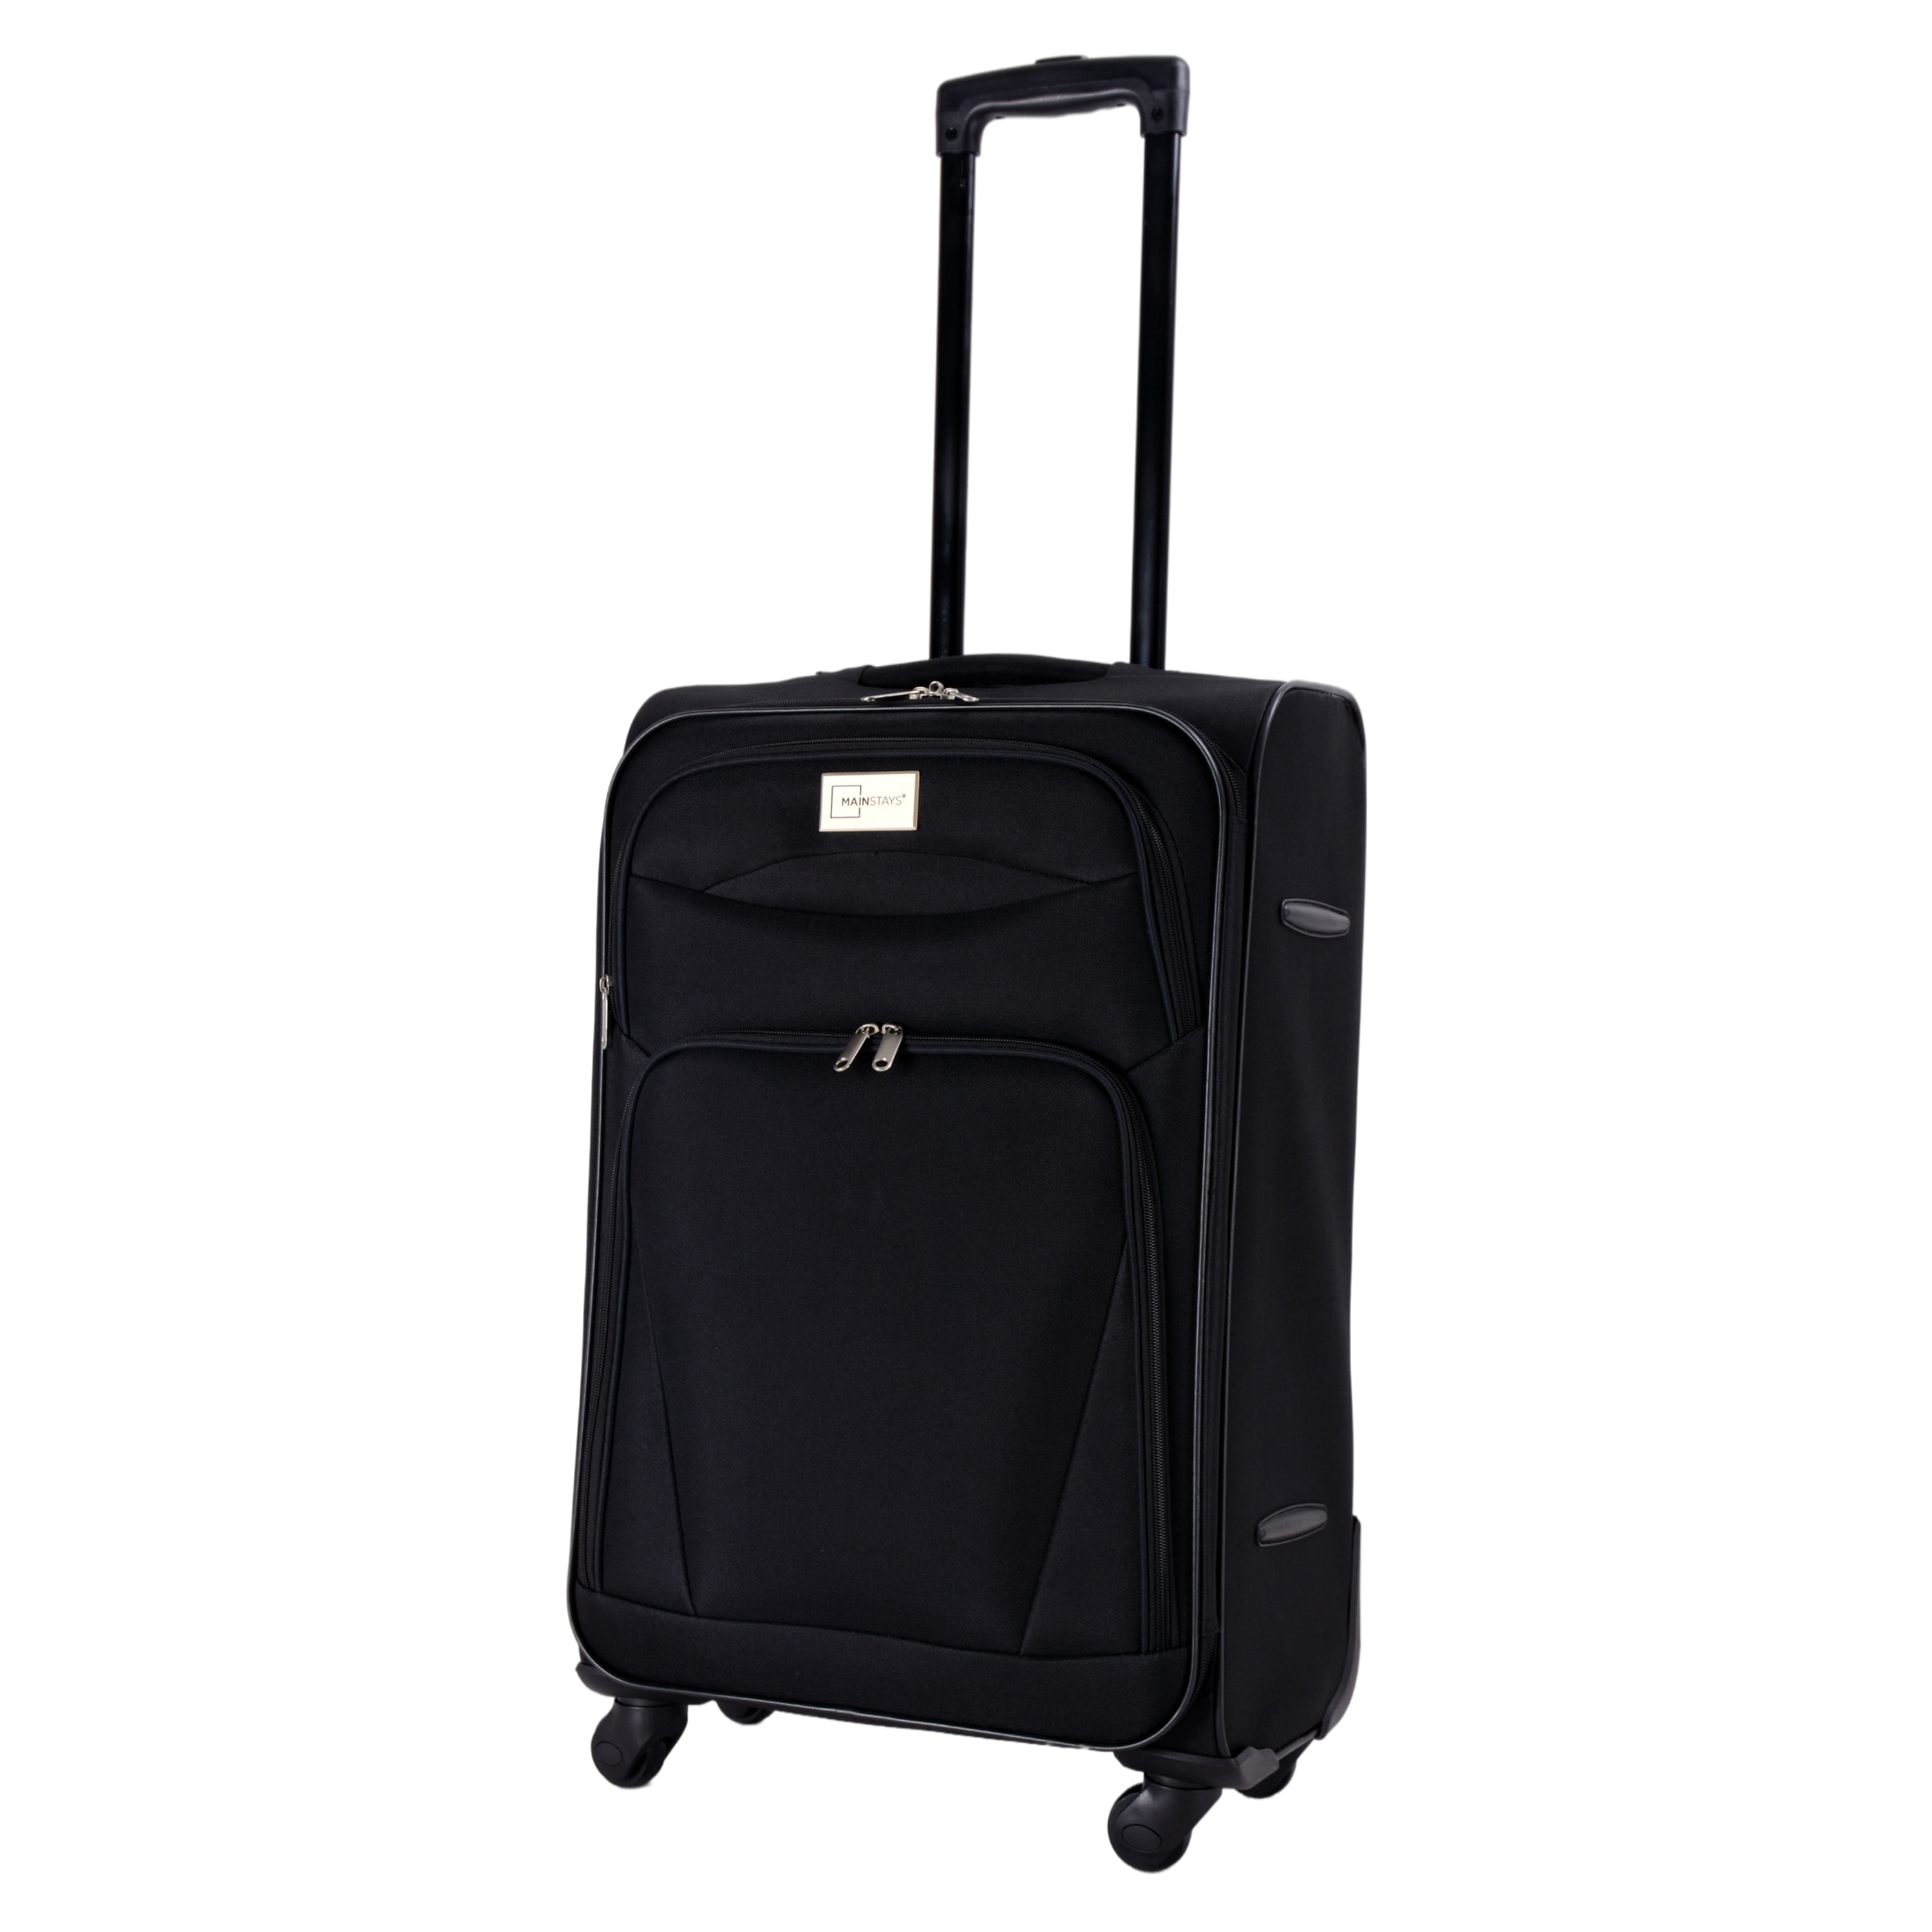  GLOBALWAY - Juego de maletas y maletas de viaje (3 piezas),  color negro : Industrial y Científico